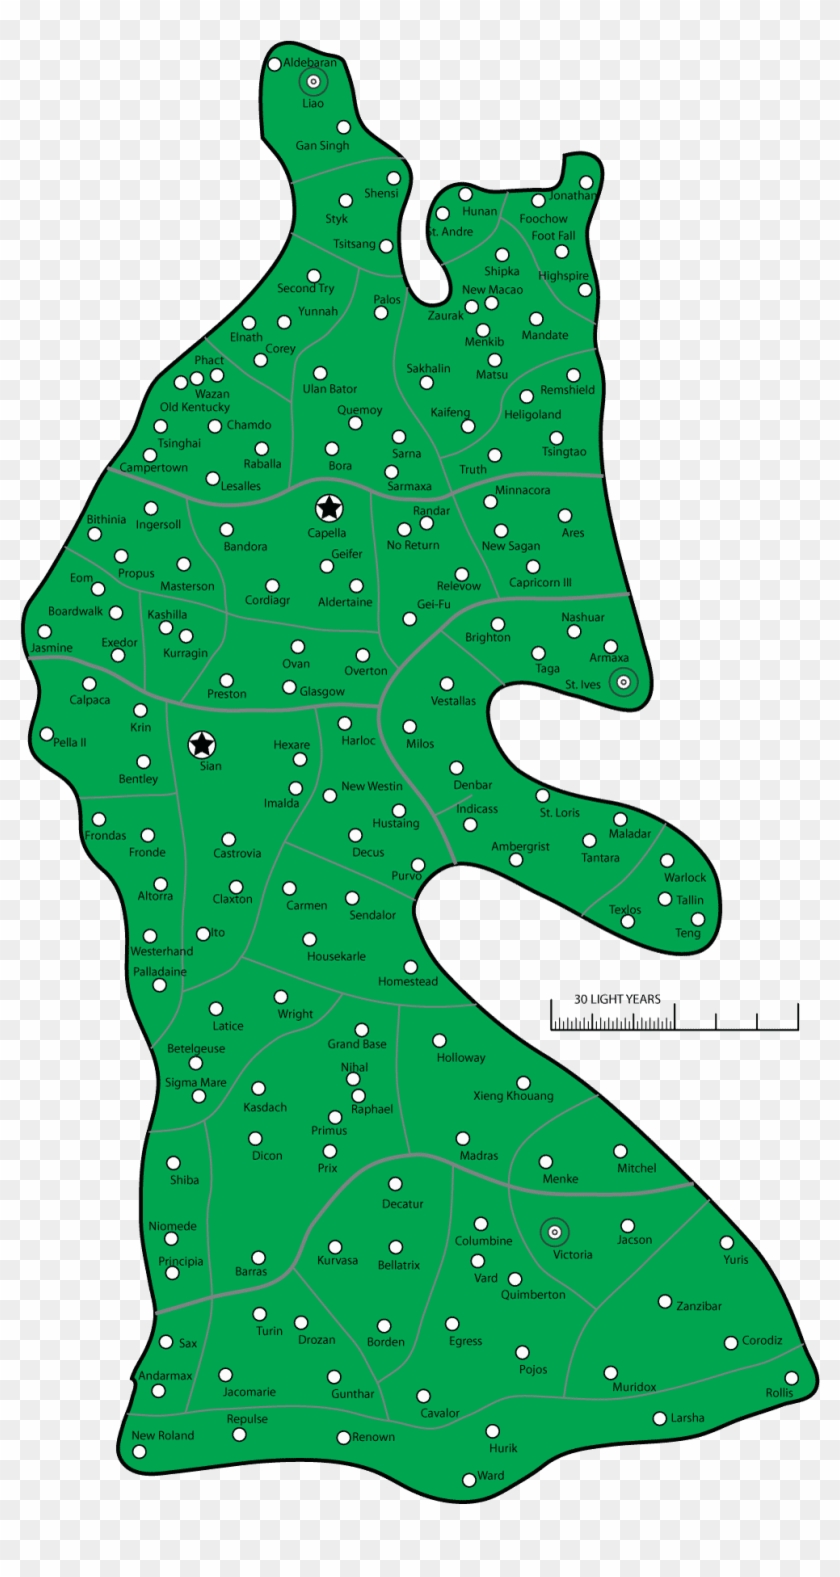 Capellan Confederation - Battletech Map Of Capellan Confederation #1170281